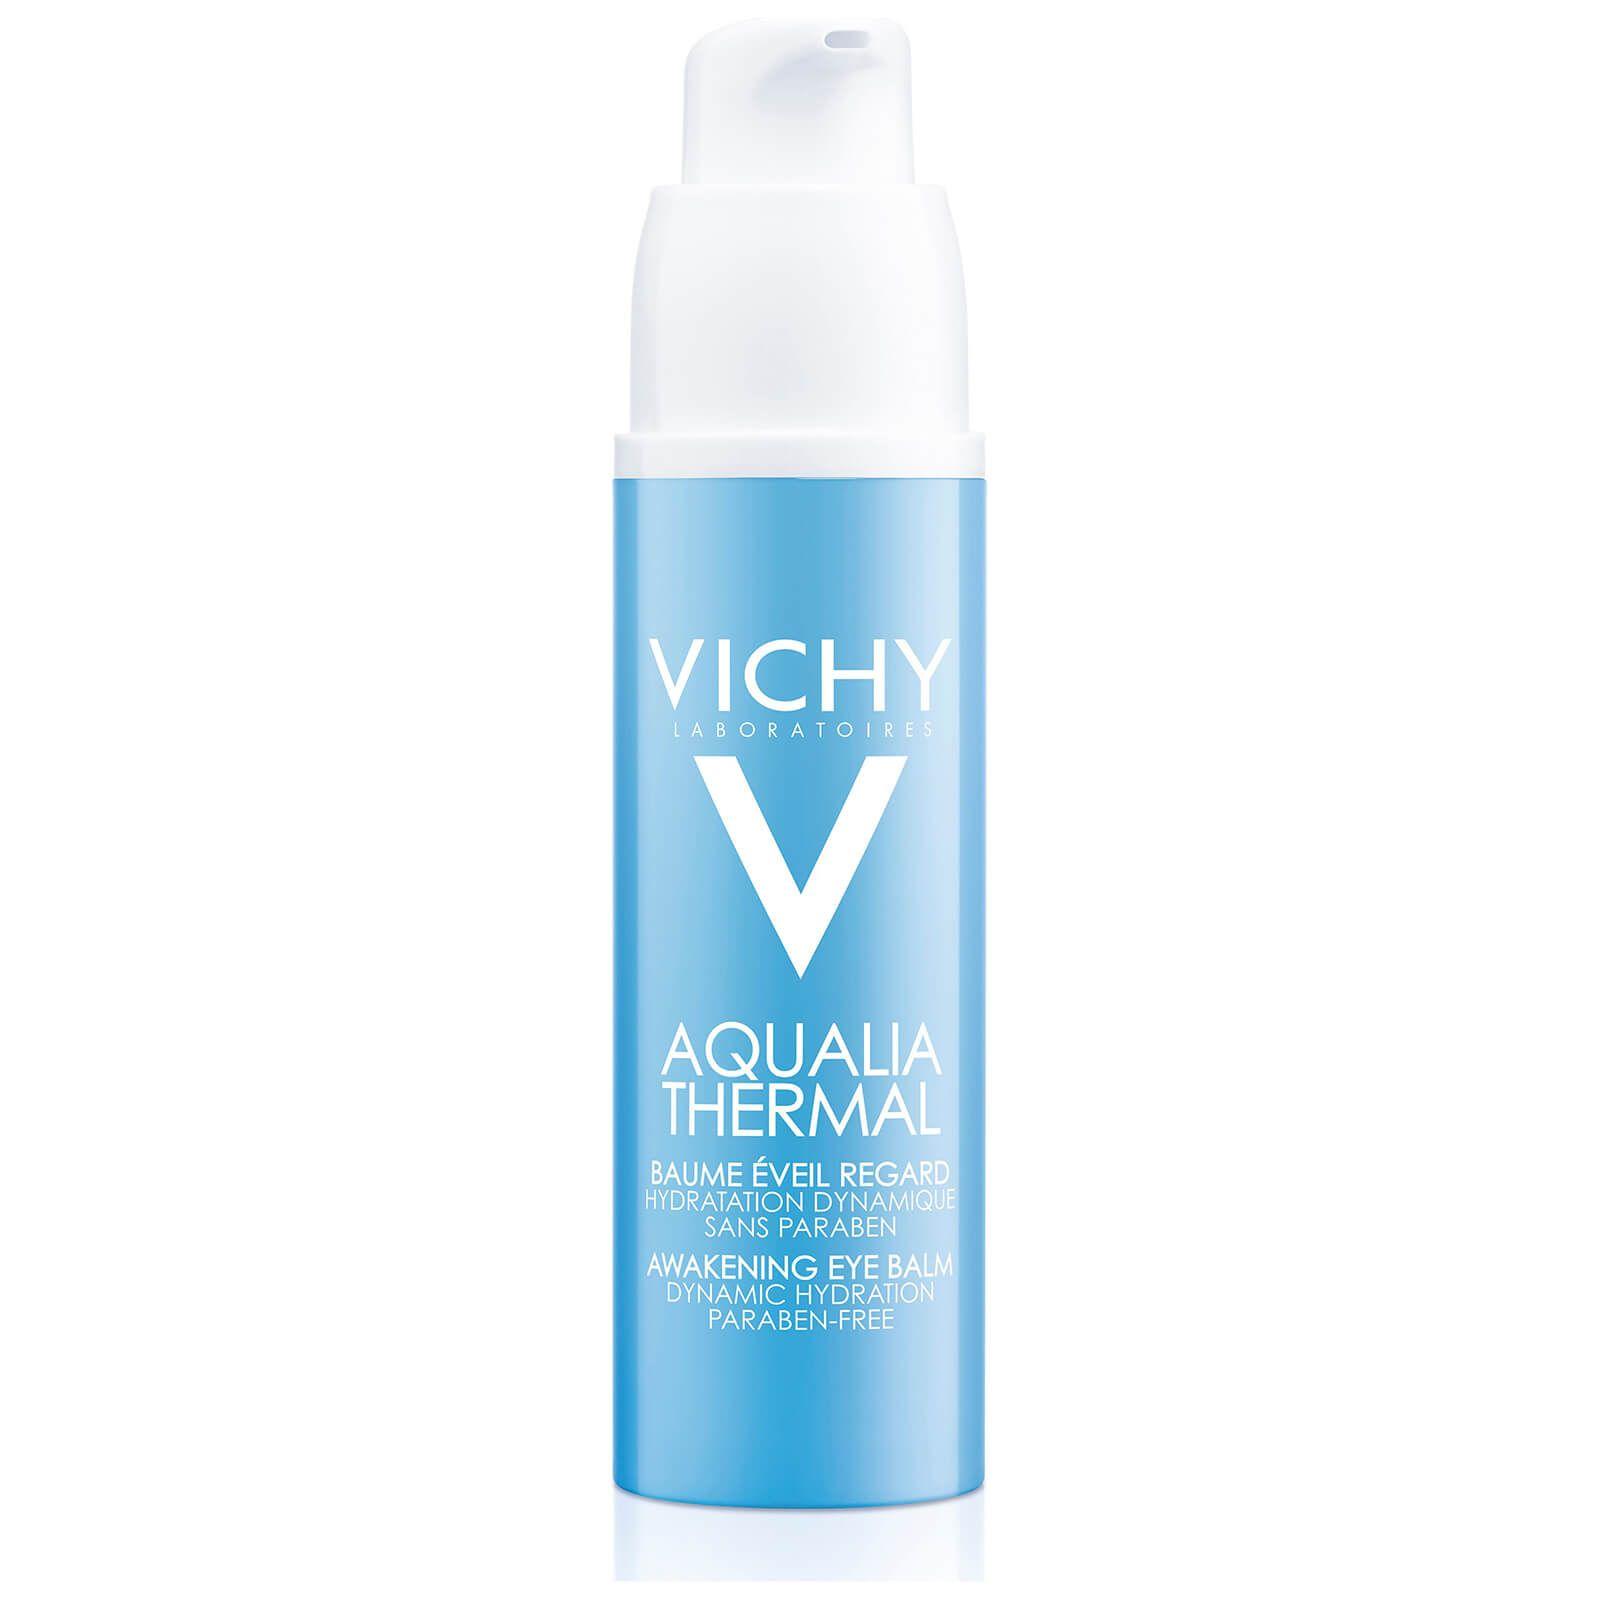 SkinStore Logo - Vichy Aqualia Thermal Awakening Eye Balm 15ml